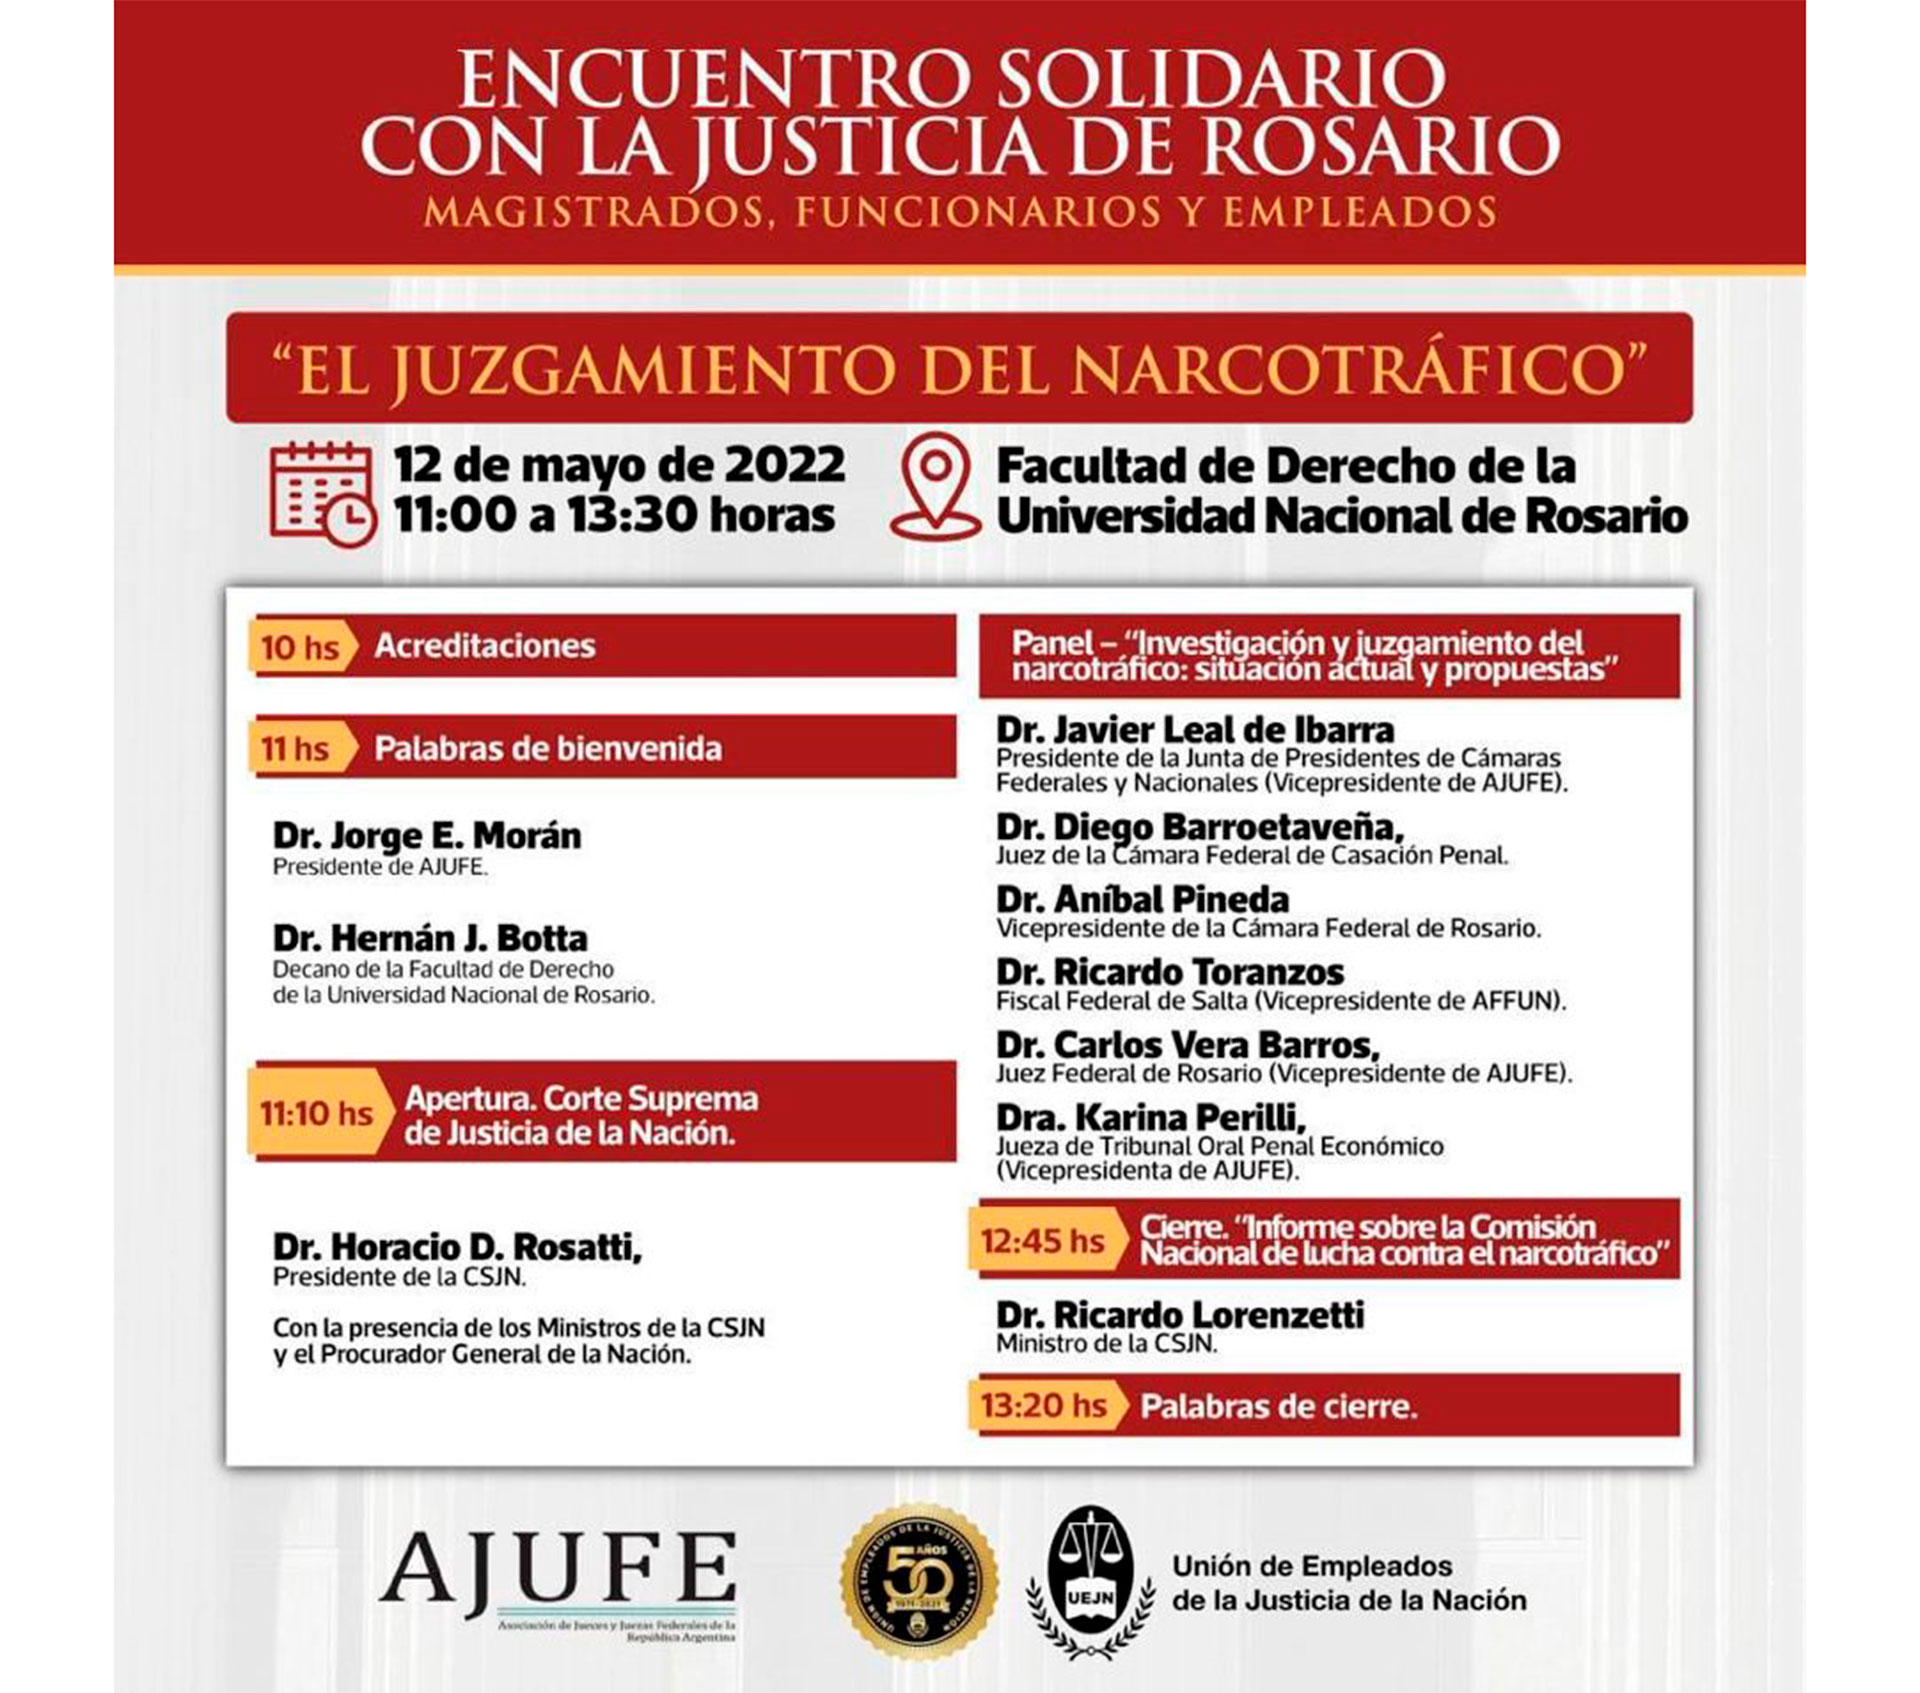 La agenda del evento en Rosario